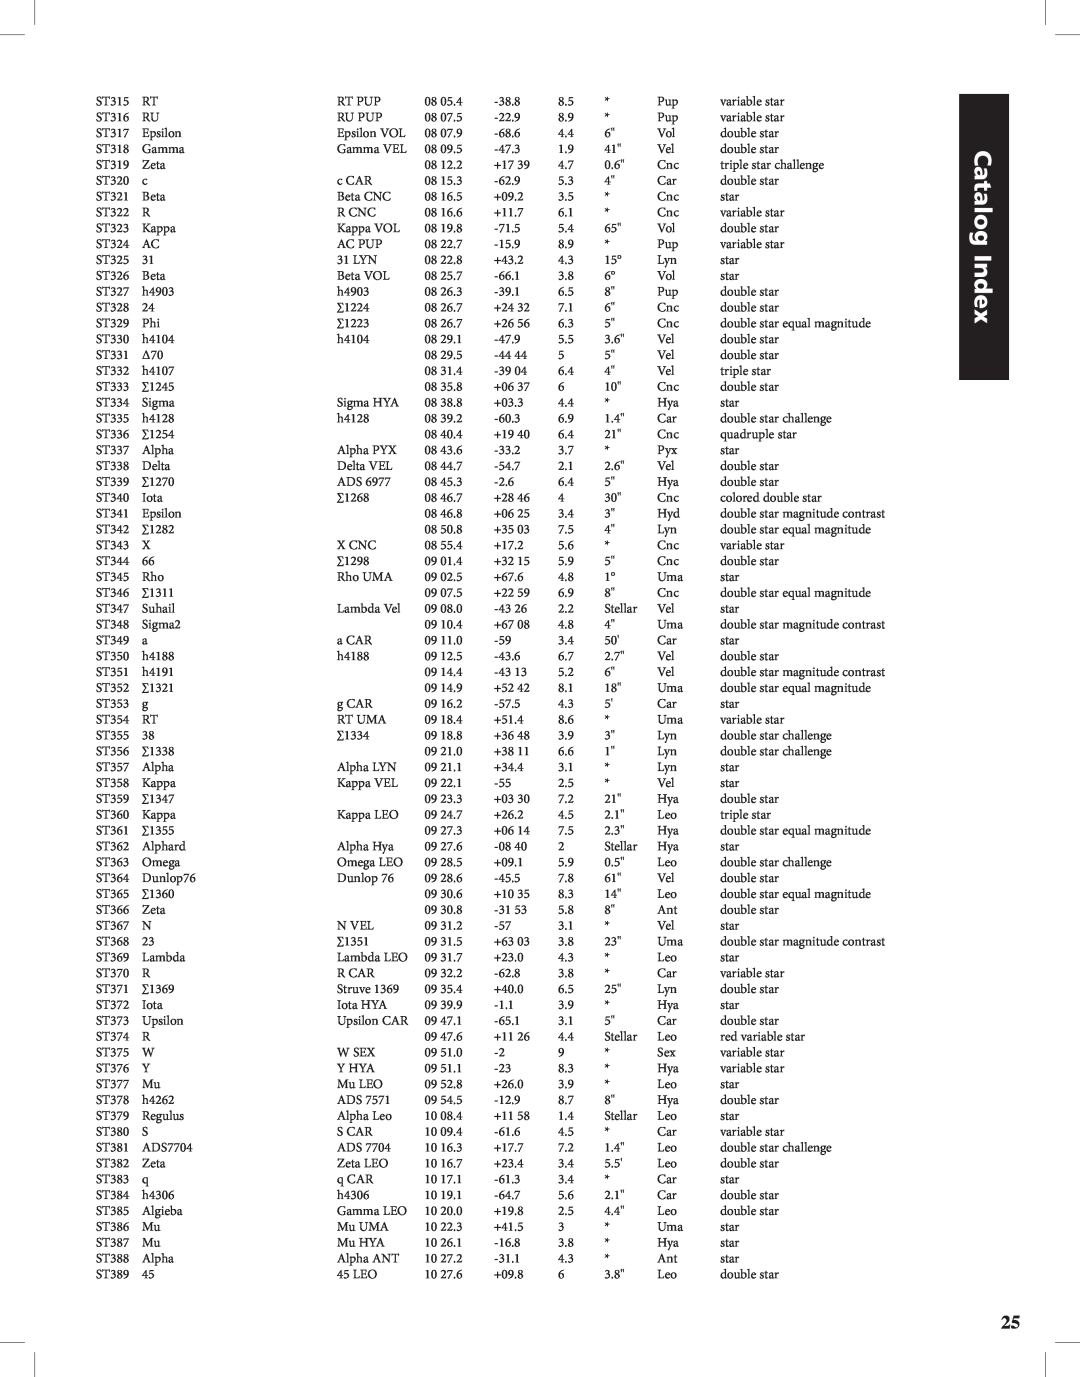 Bushnell Discoverer instruction manual Catalog Index, ST315 